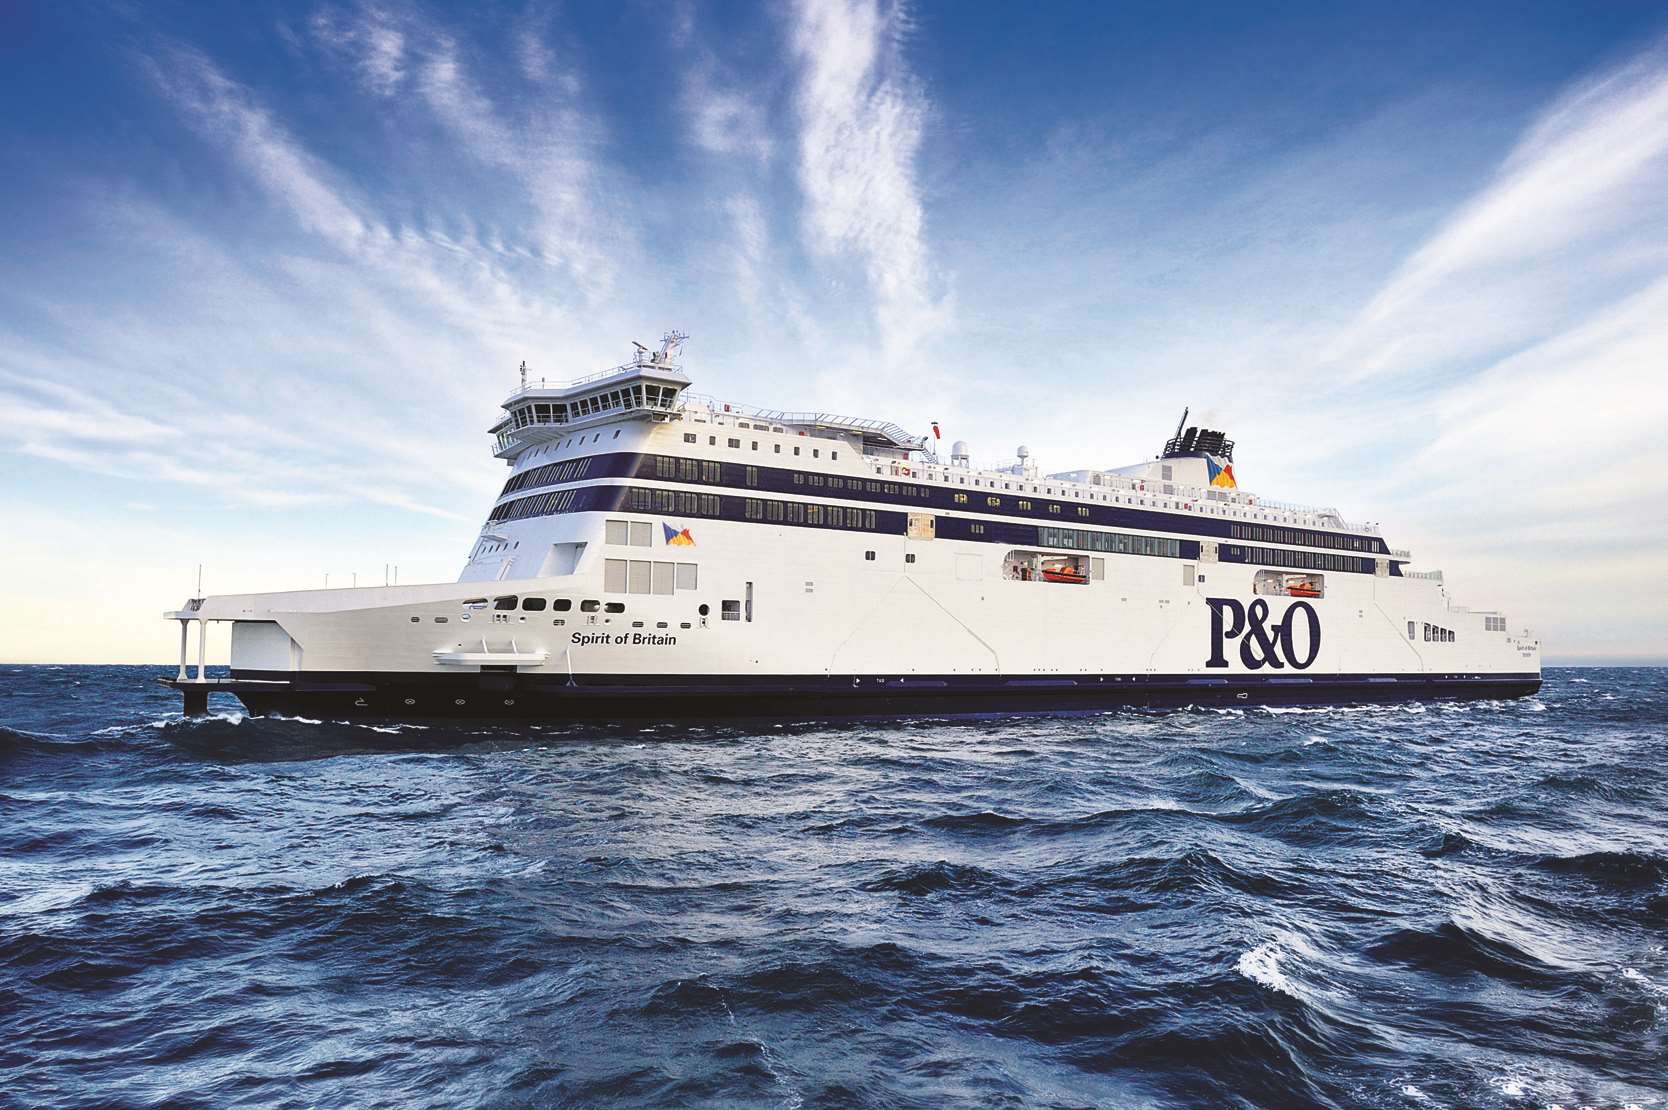 P&O's Spirit of Britain ferry